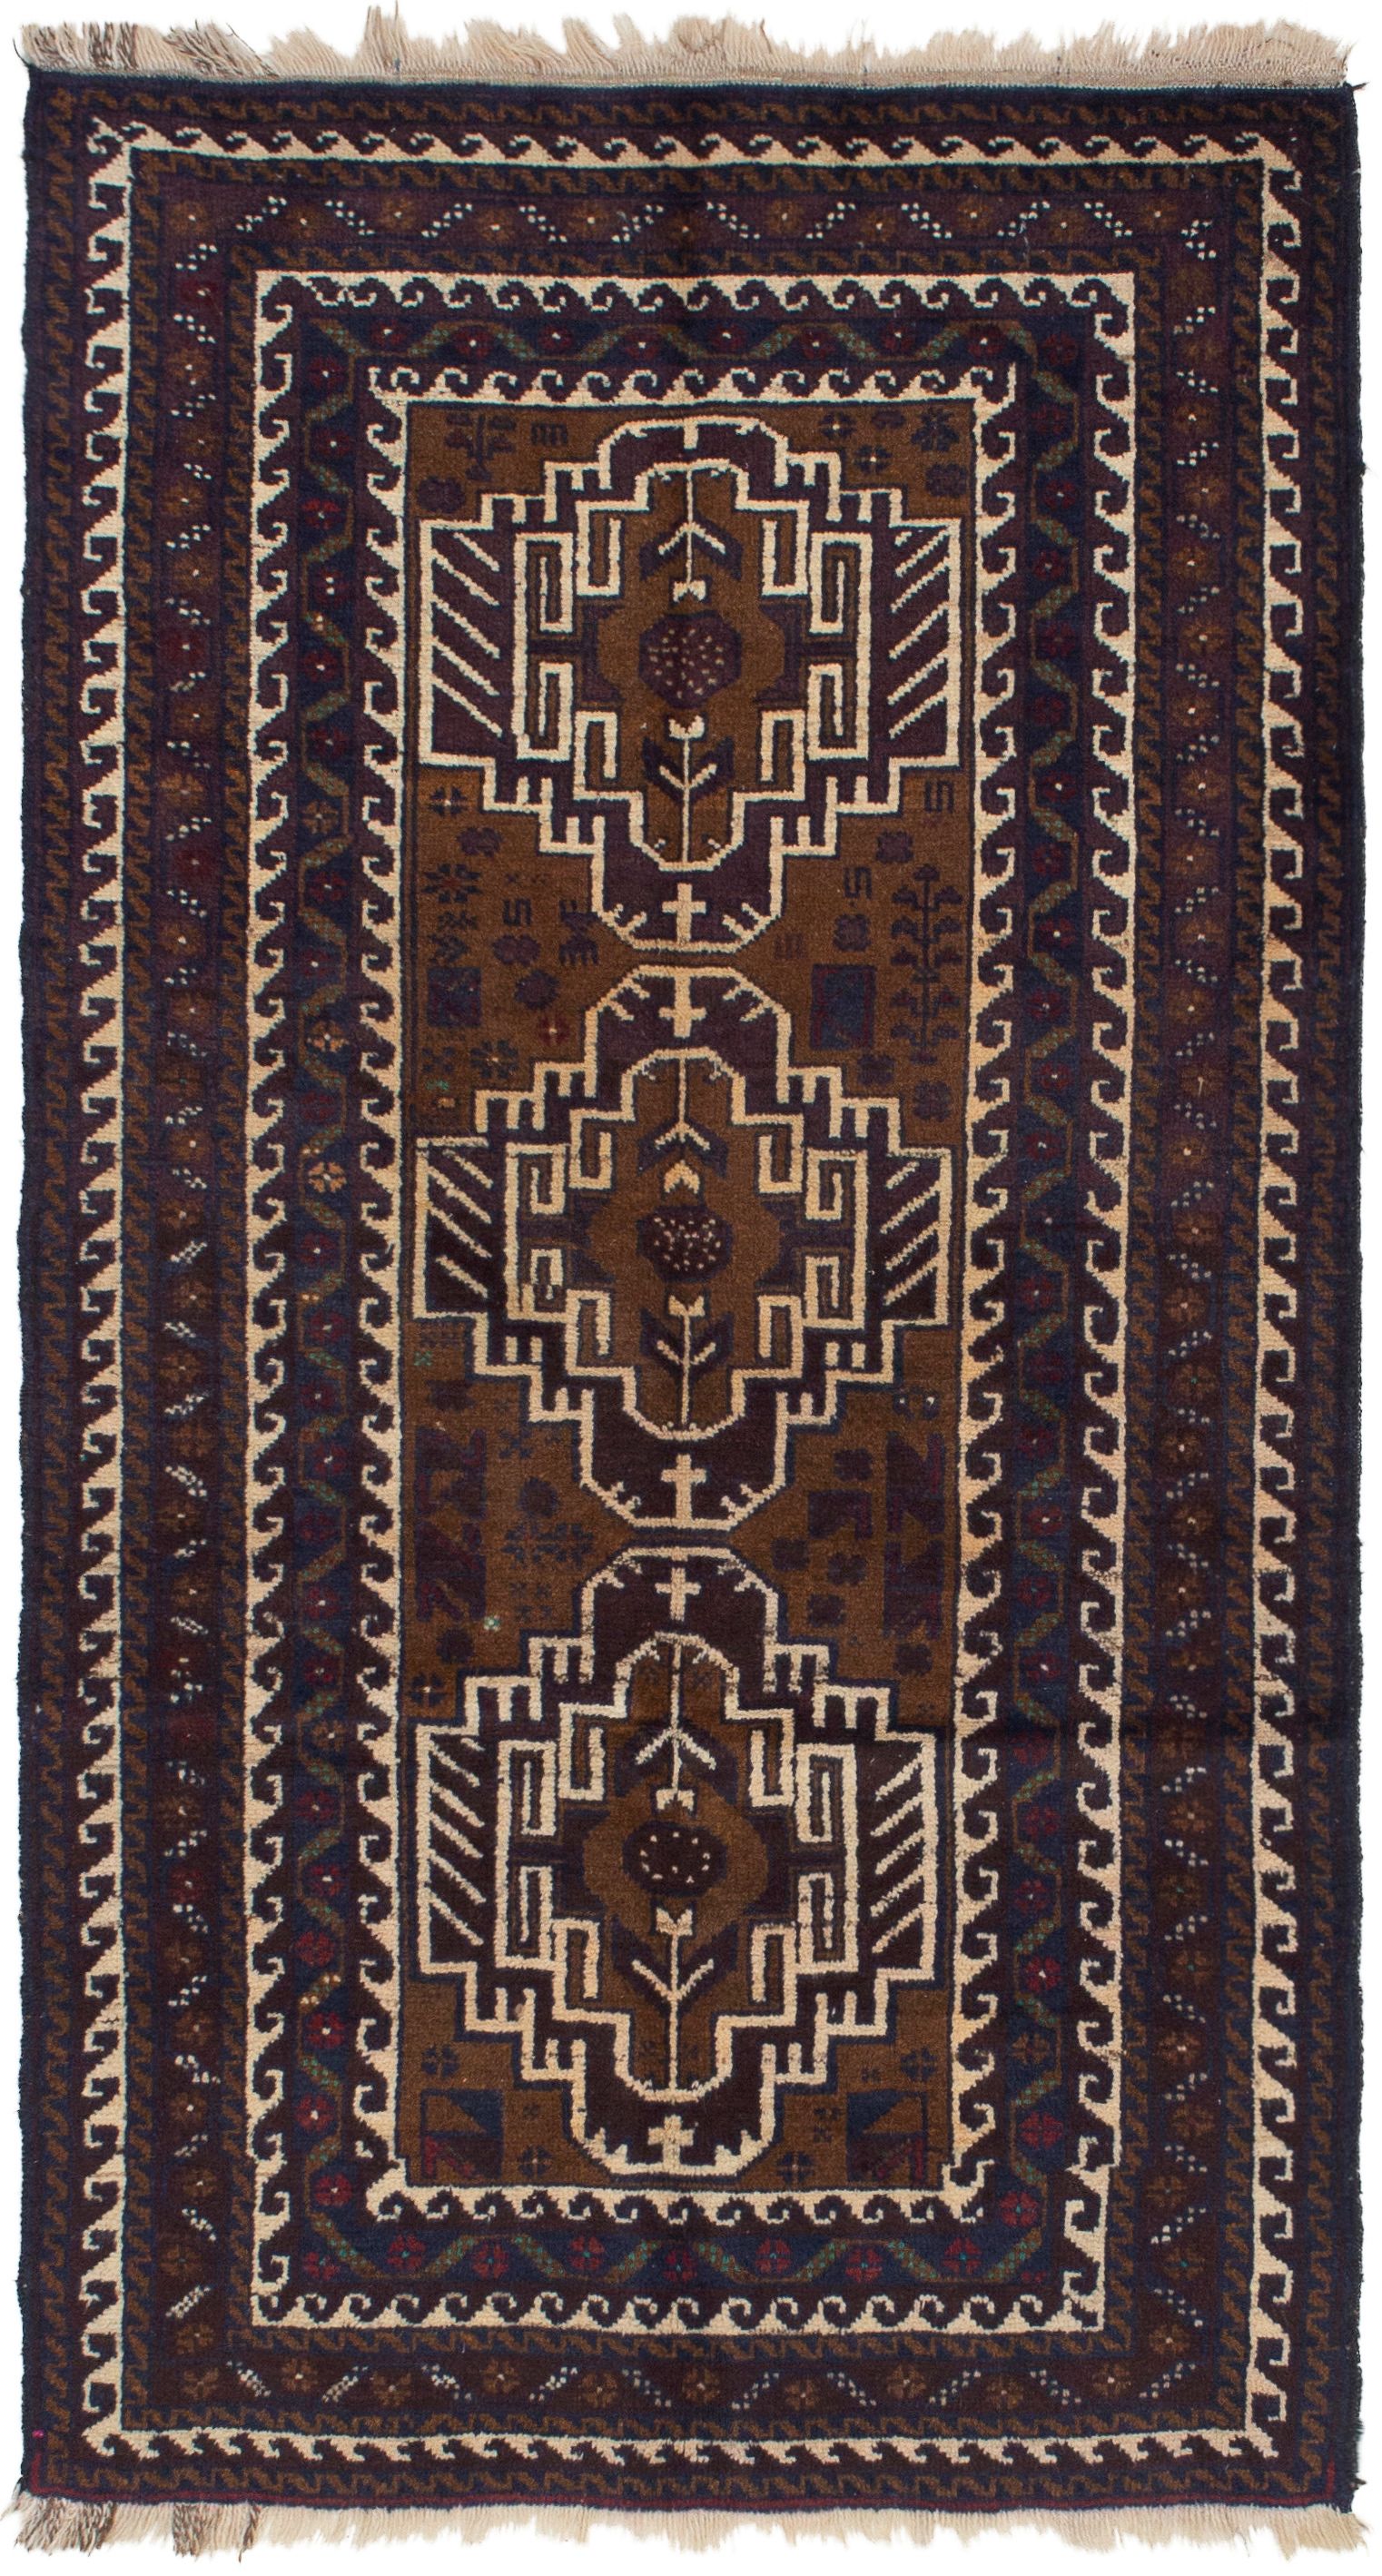 Hand-knotted Kazak Dark Navy, Light Brown Wool Rug 3'6" x 6'5" Size: 3'6" x 6'5"  